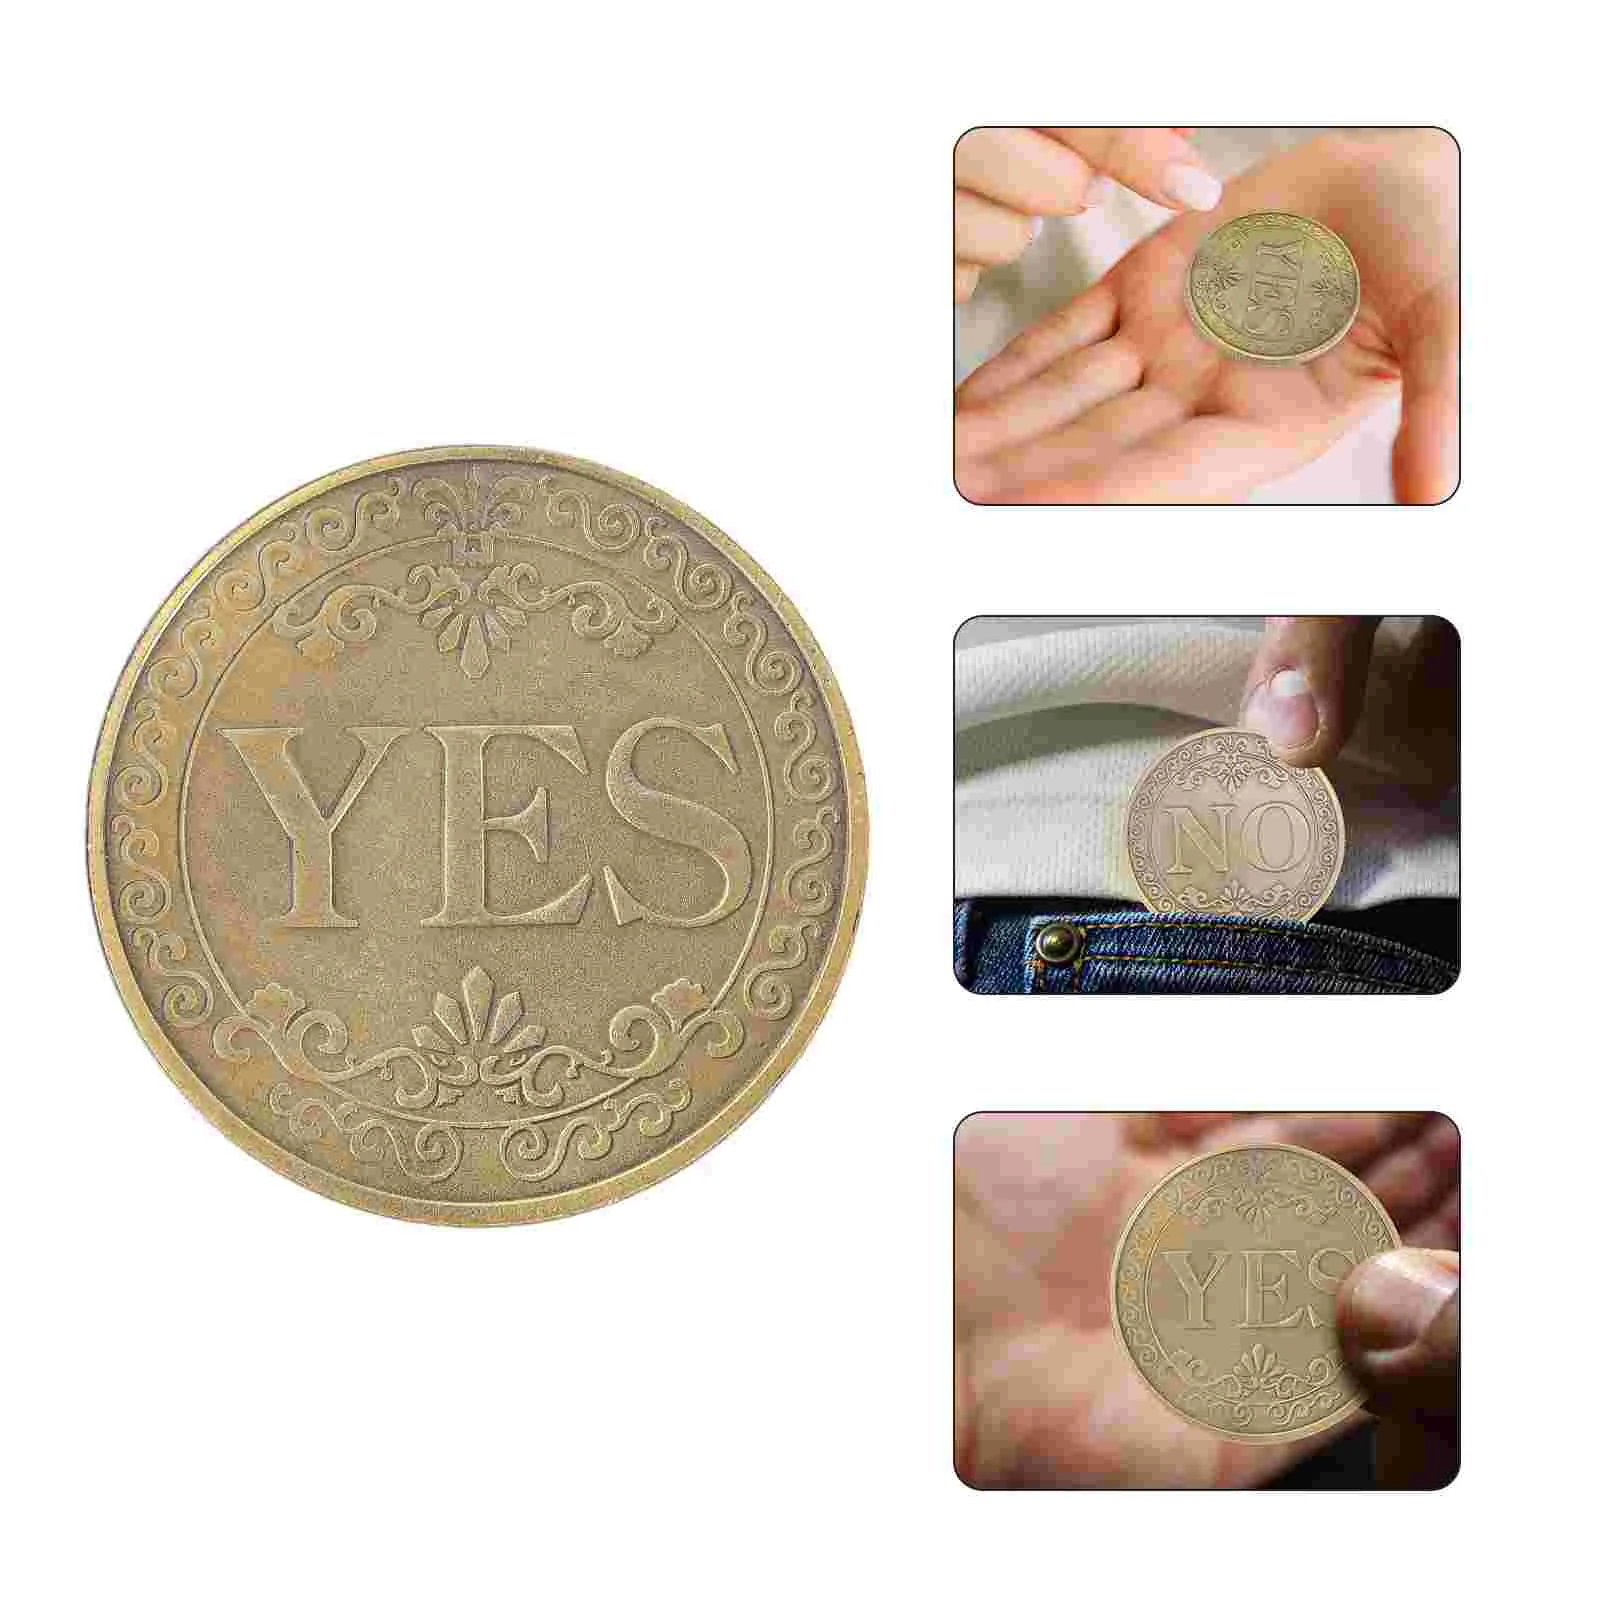 

Бронзовая Монета да нет выбора памятный стереоскопический рельефный сувенир в ретро стиле